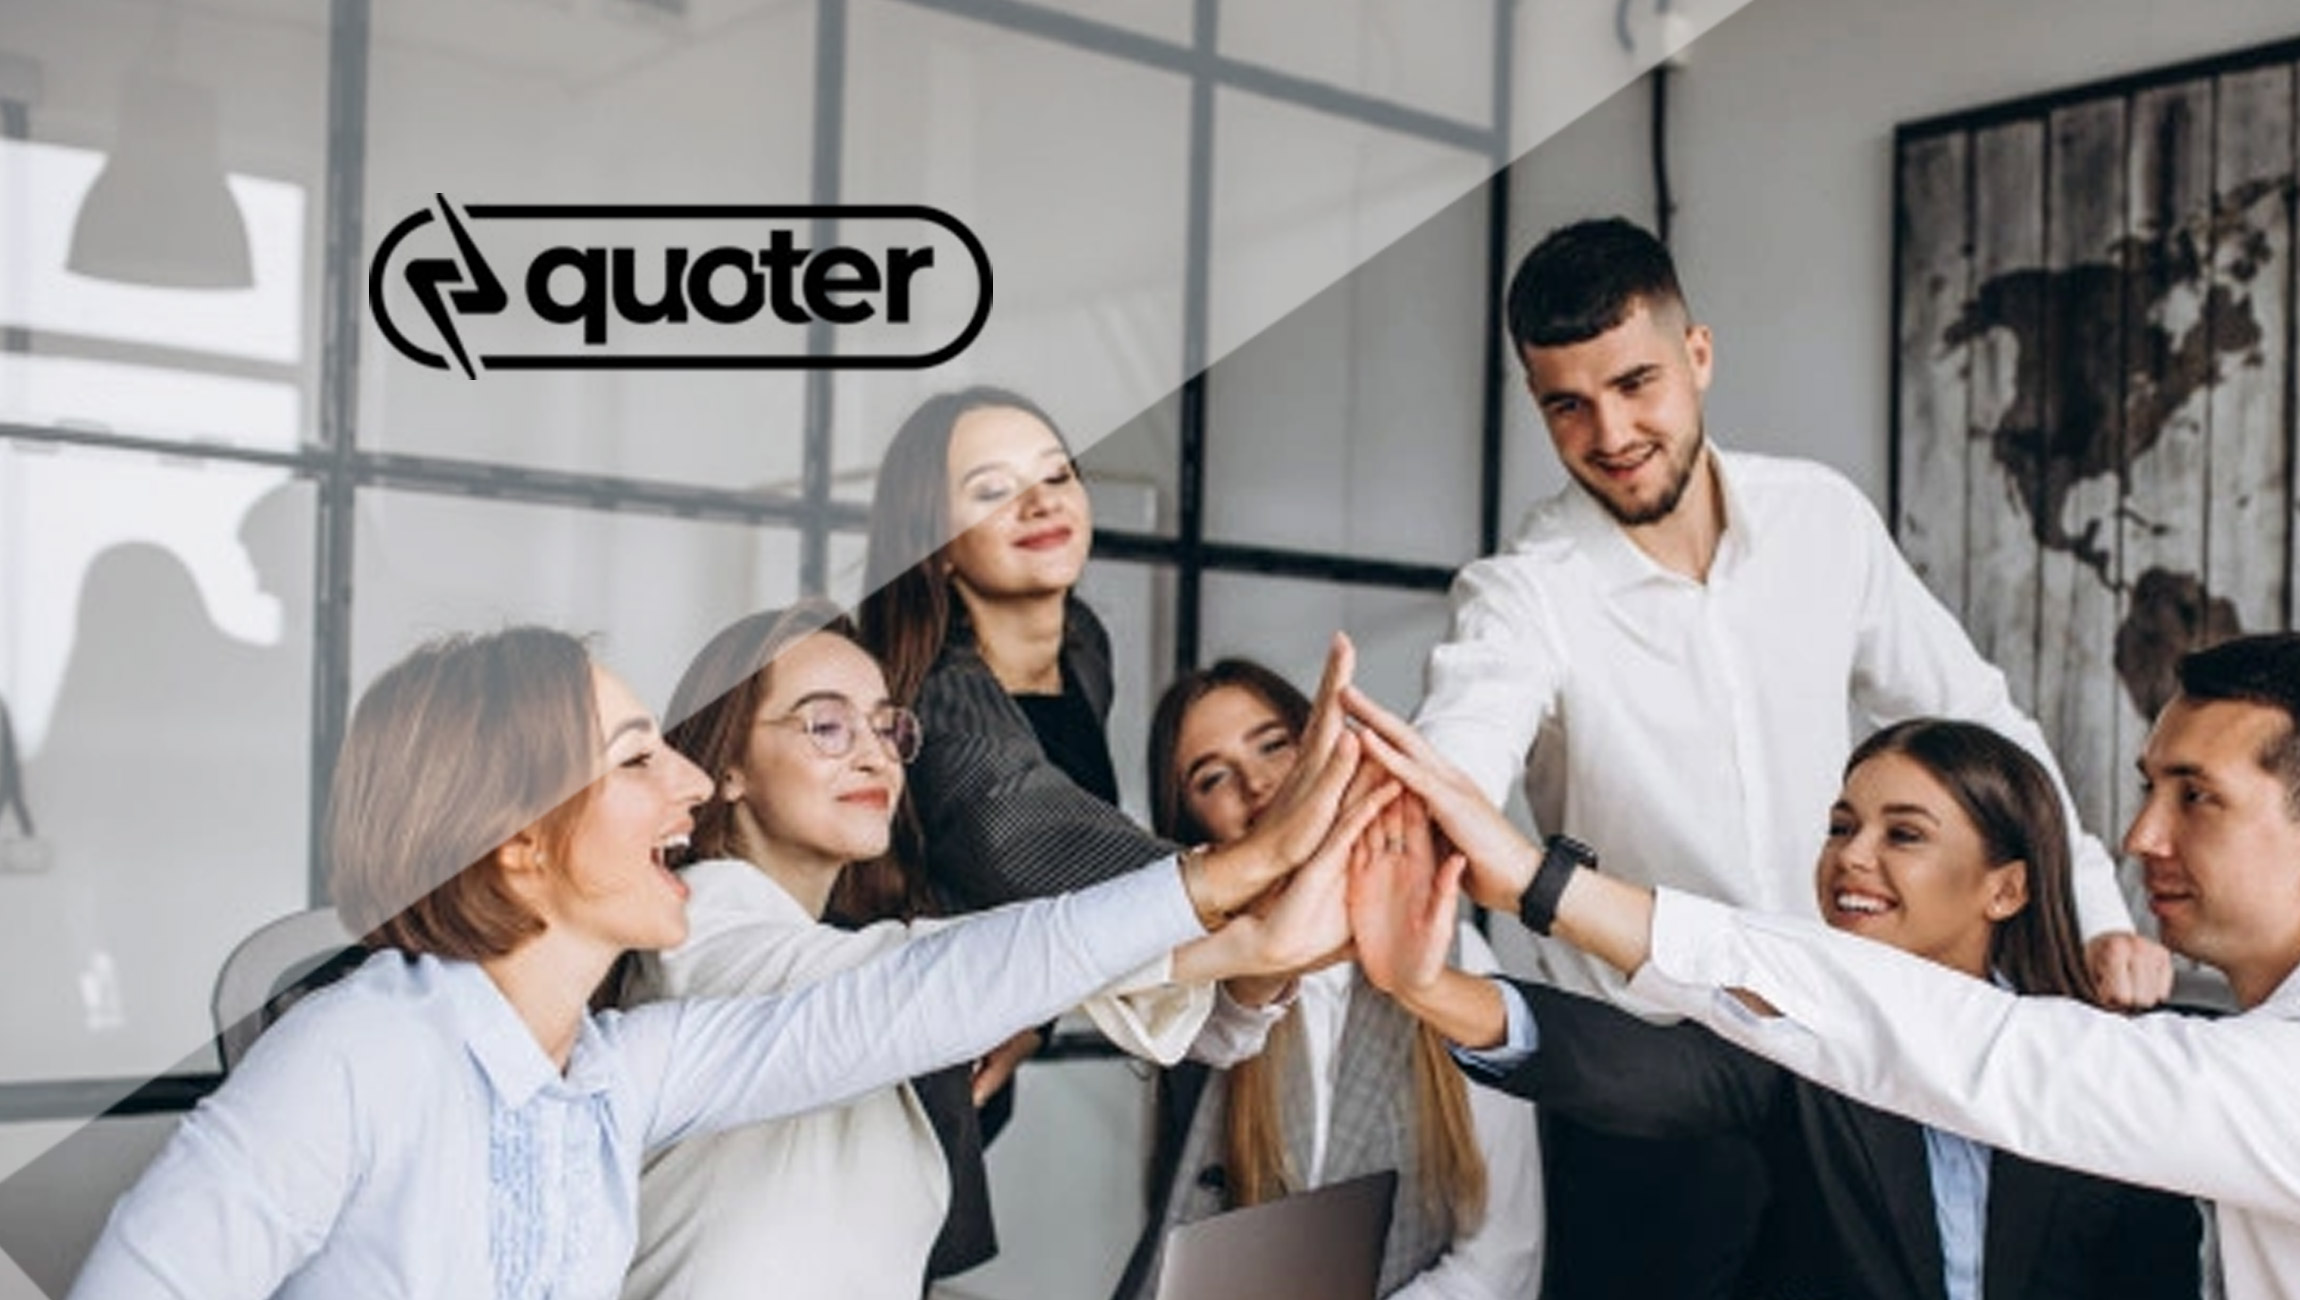 Quoter Celebrates 1,000 Partner Milestone With New Brand